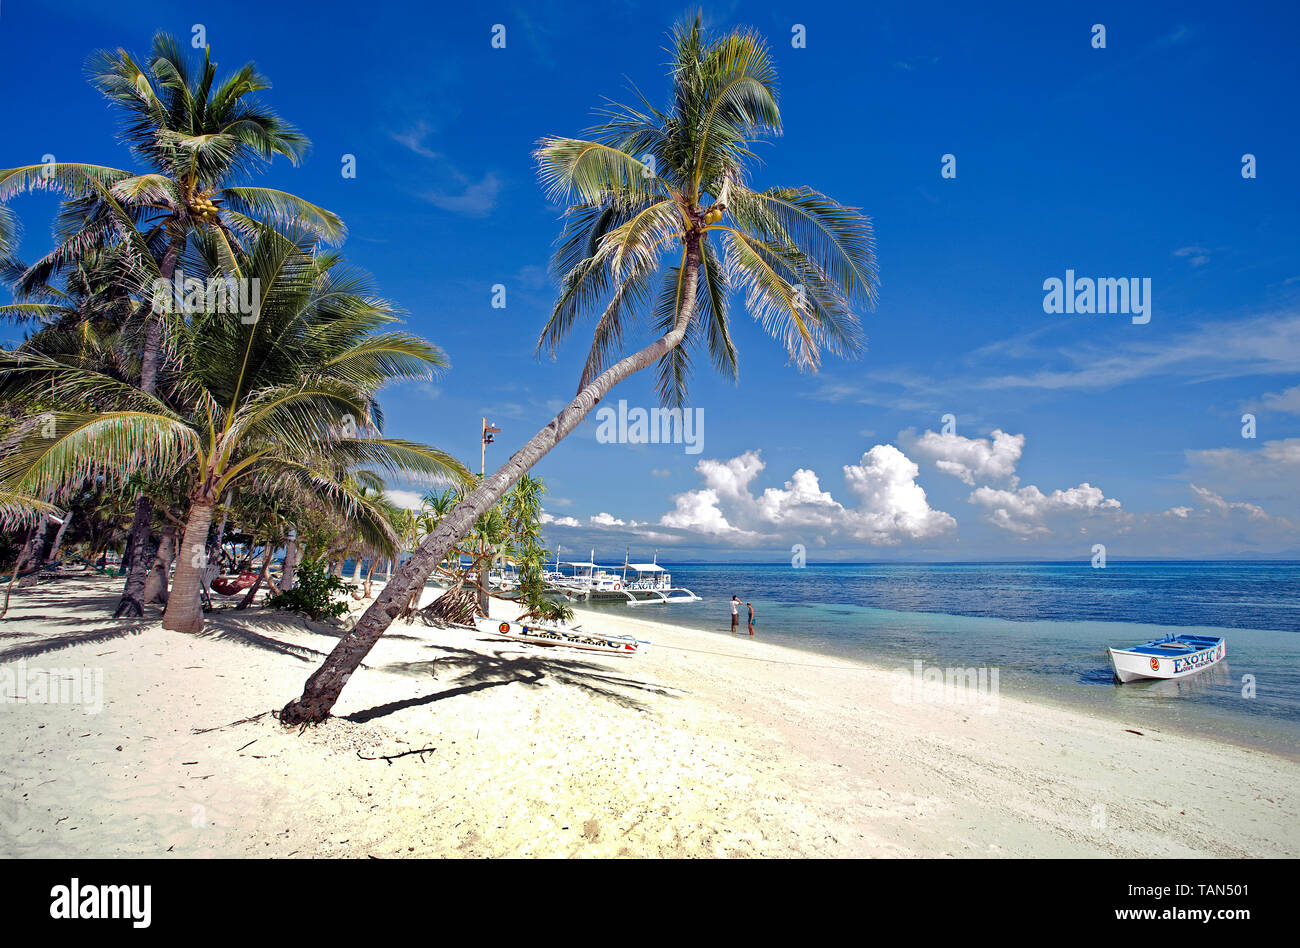 Palmiers à Bounty beach, Malapascua Island, Cebu, Philippines Banque D'Images